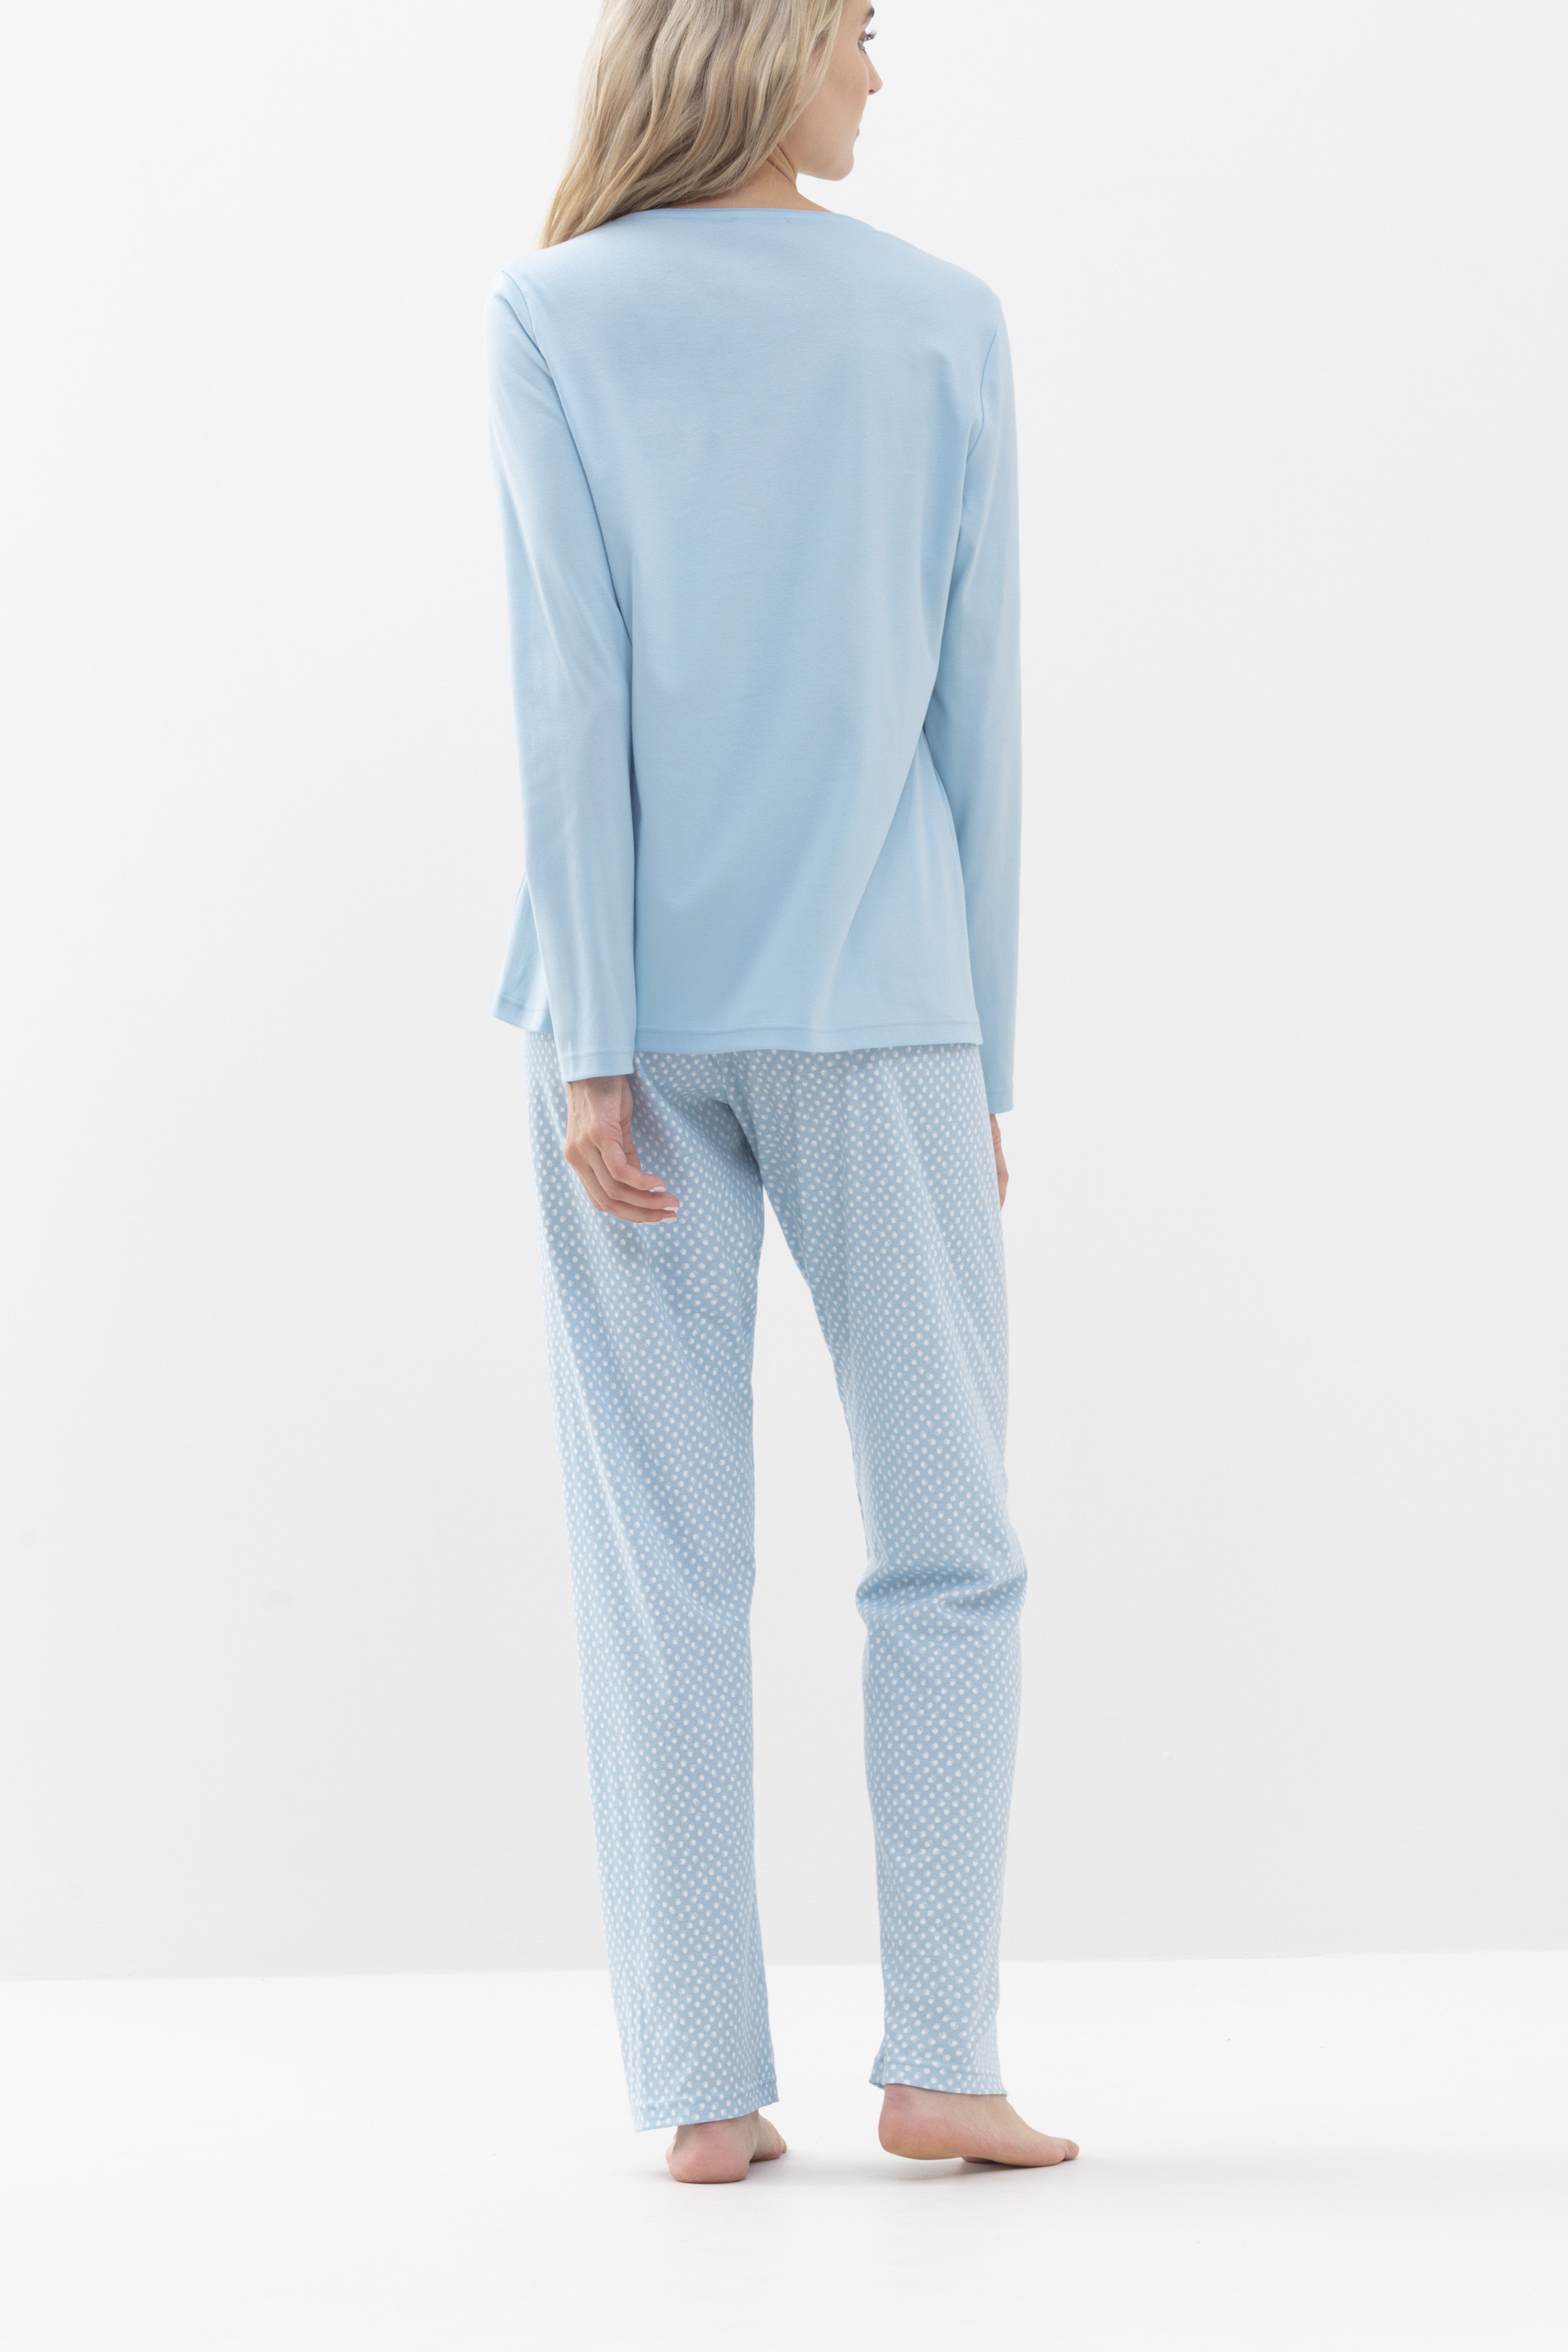 Schlafanzug Dream Blue Serie Emelie Rückansicht | mey®